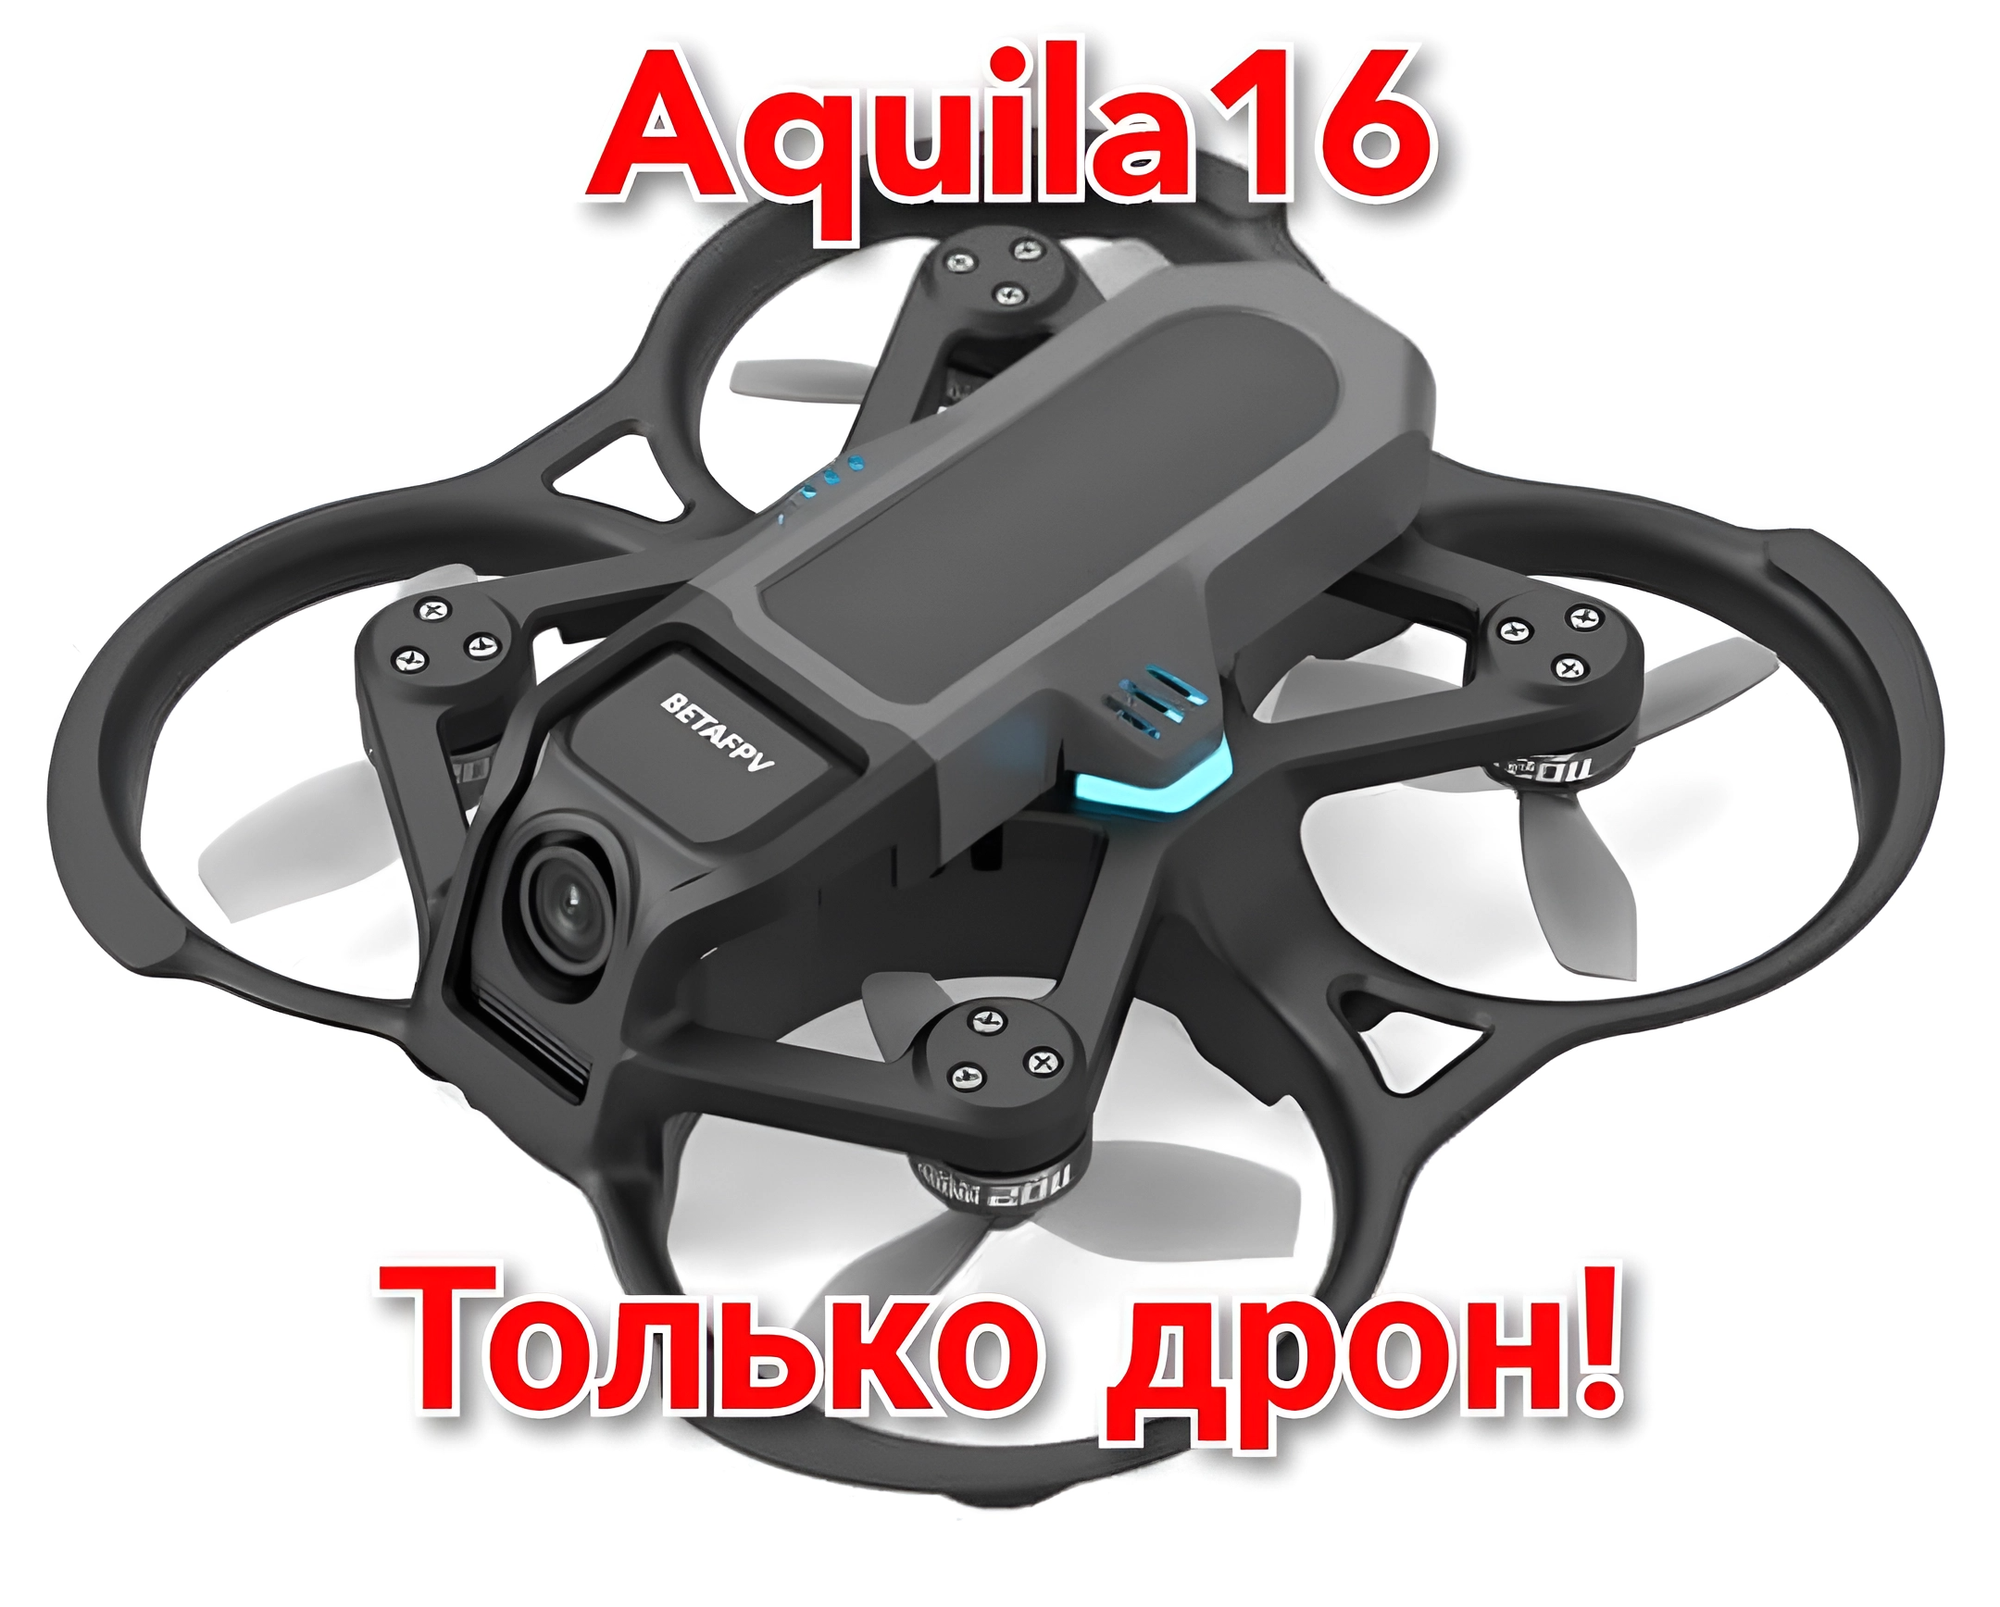 Дрон (не в комплекте!) Aquila-16